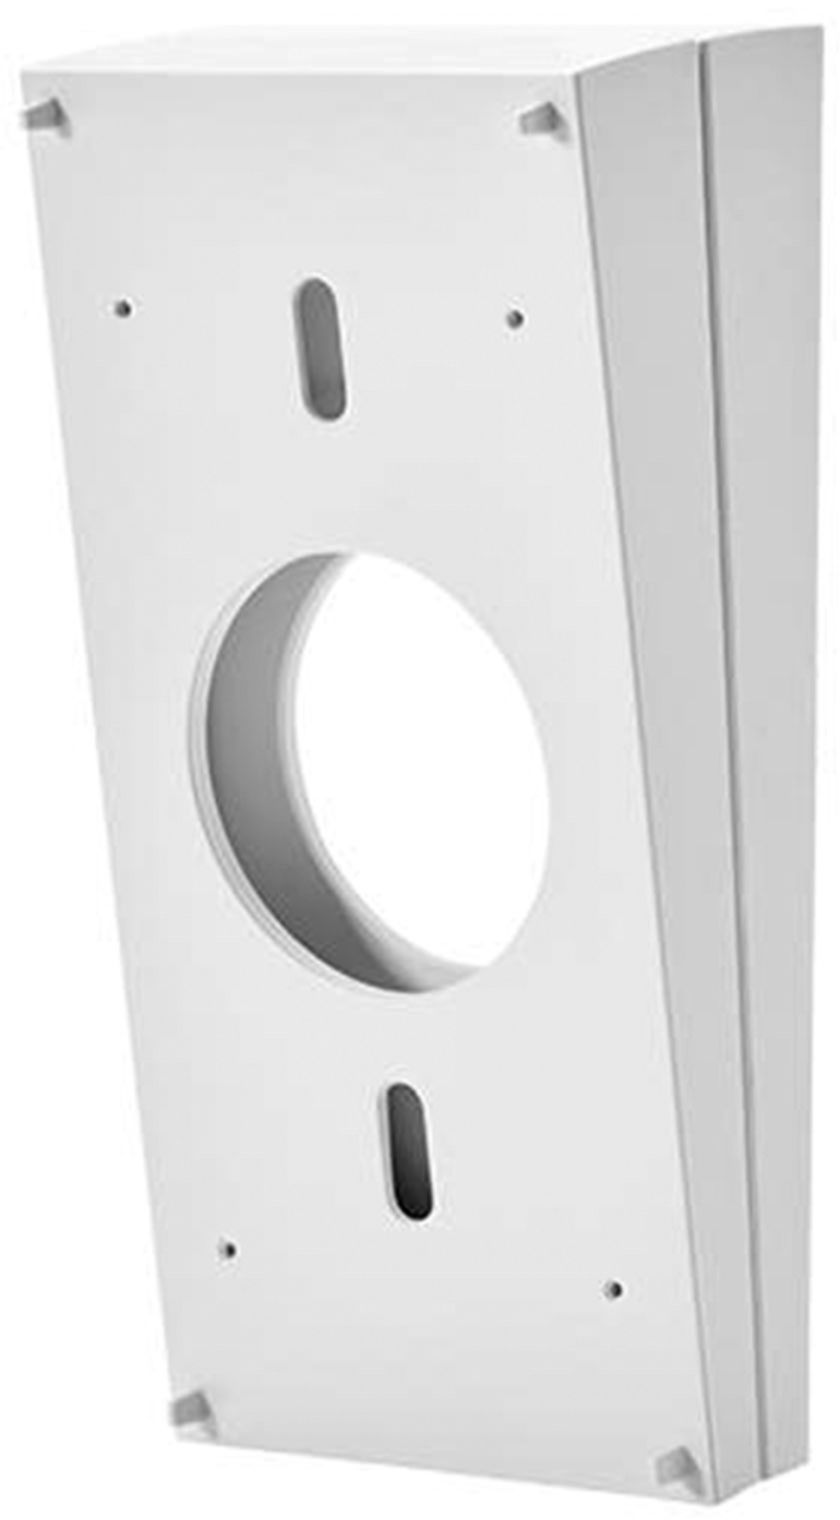 Ring Video Doorbell Wedge Kit White 8KKCS6-0000 - Best Buy